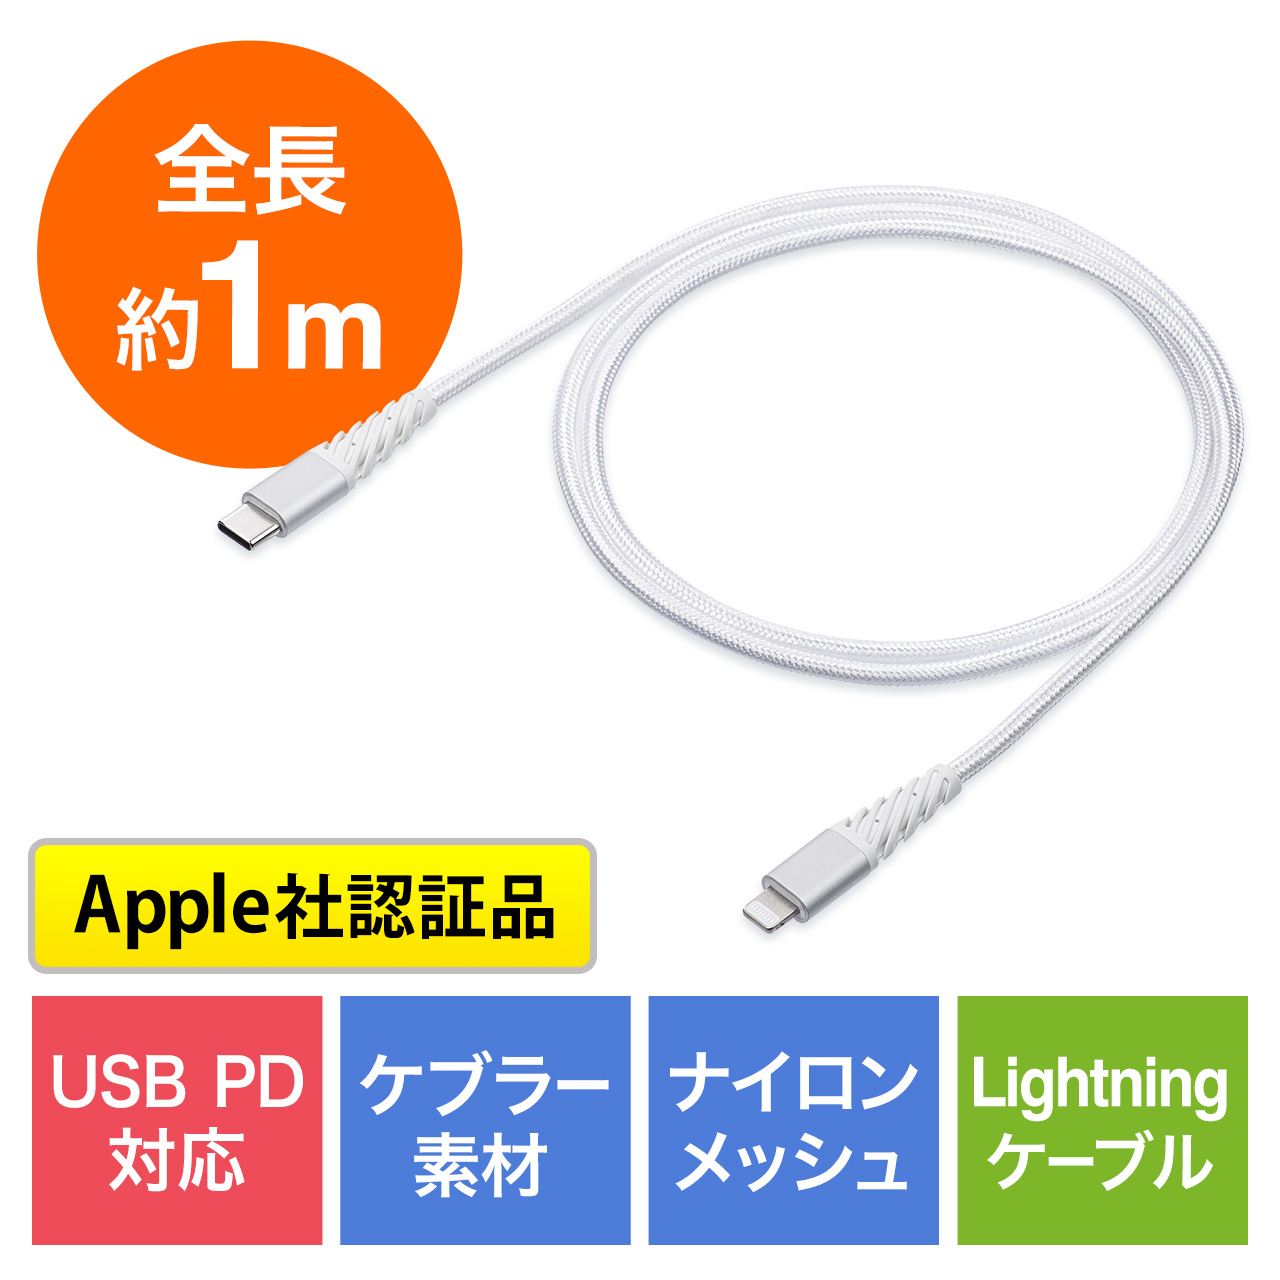 断線しにくい USB Type-C Lightningケーブル 1m 高耐久メッシュ被覆 Apple MFi認証品 USB PD ホワイト  500-IPLM025Wの販売商品 通販ならサンワダイレクト